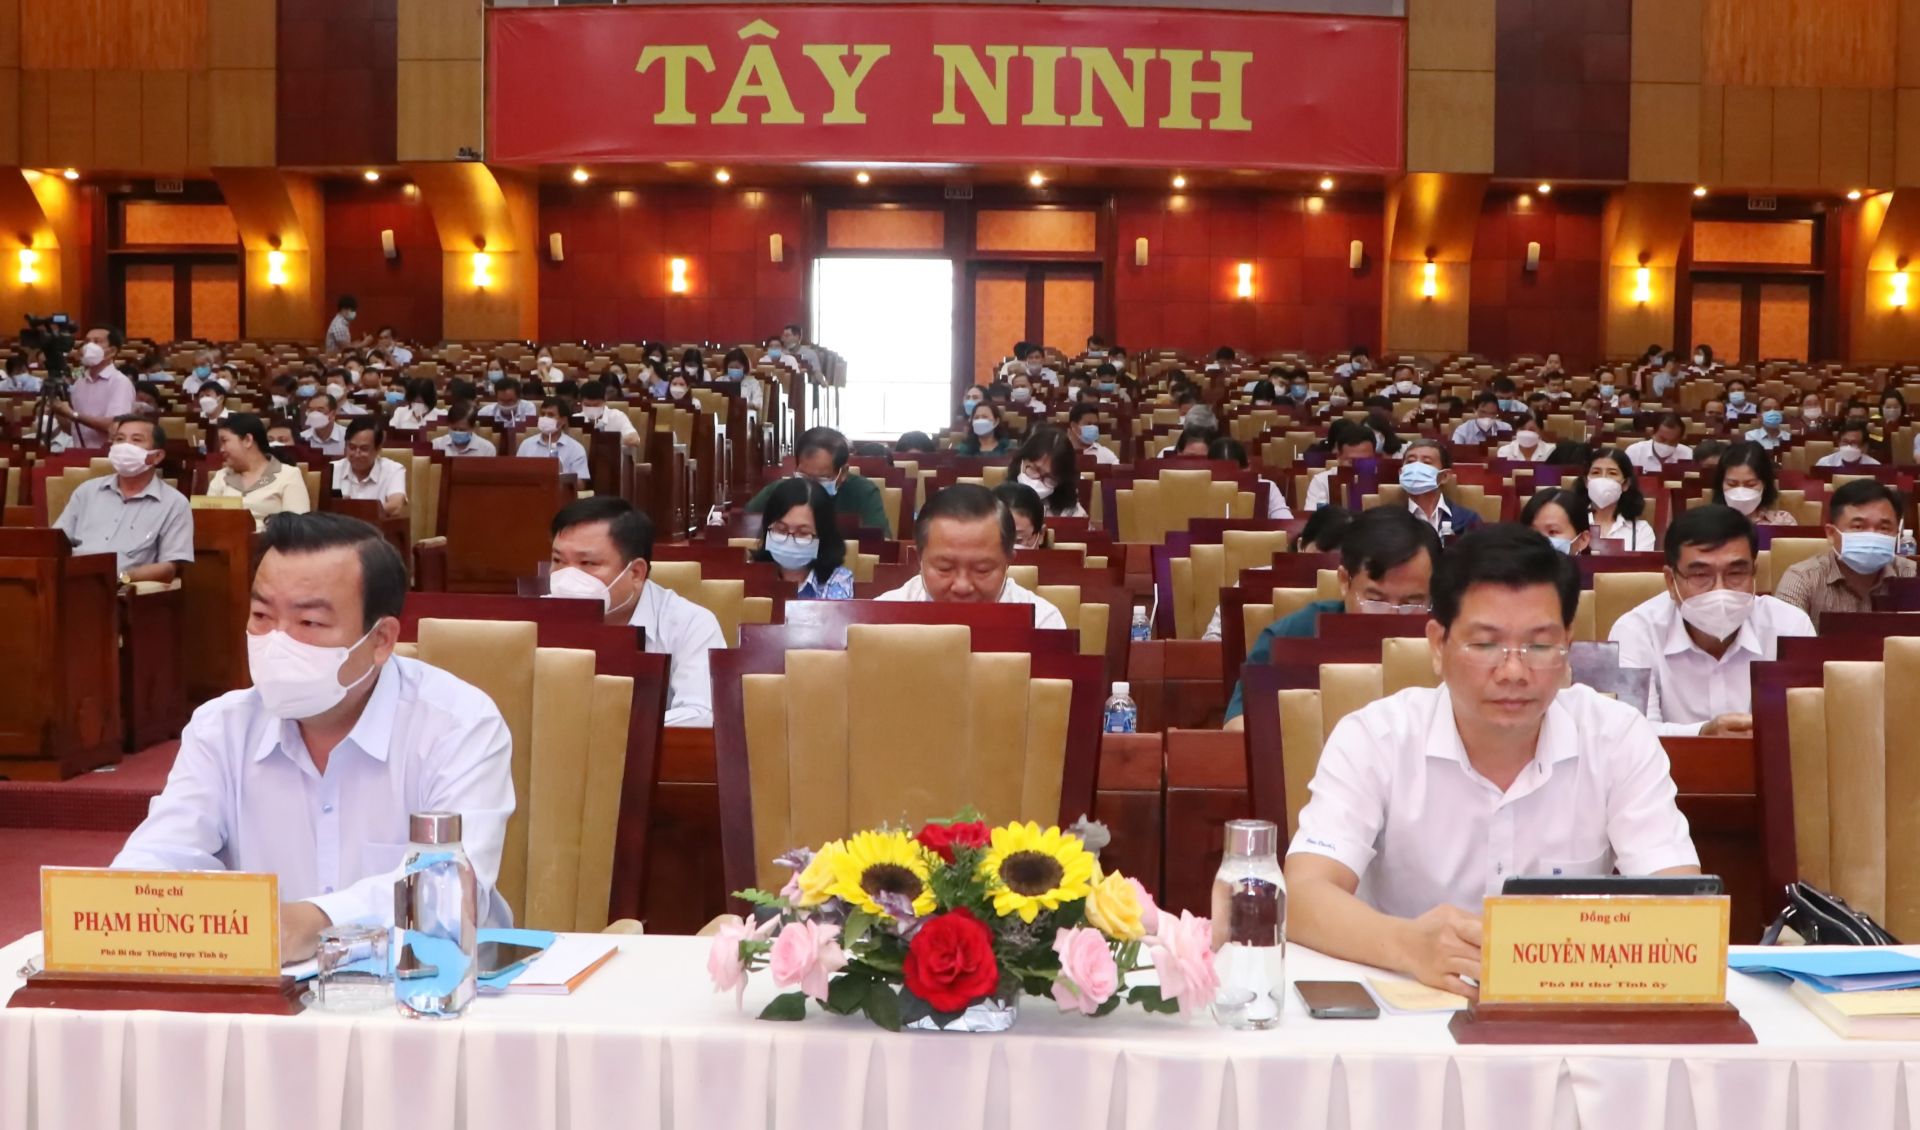 Điểm báo in Tây Ninh ngày 11.05.2022